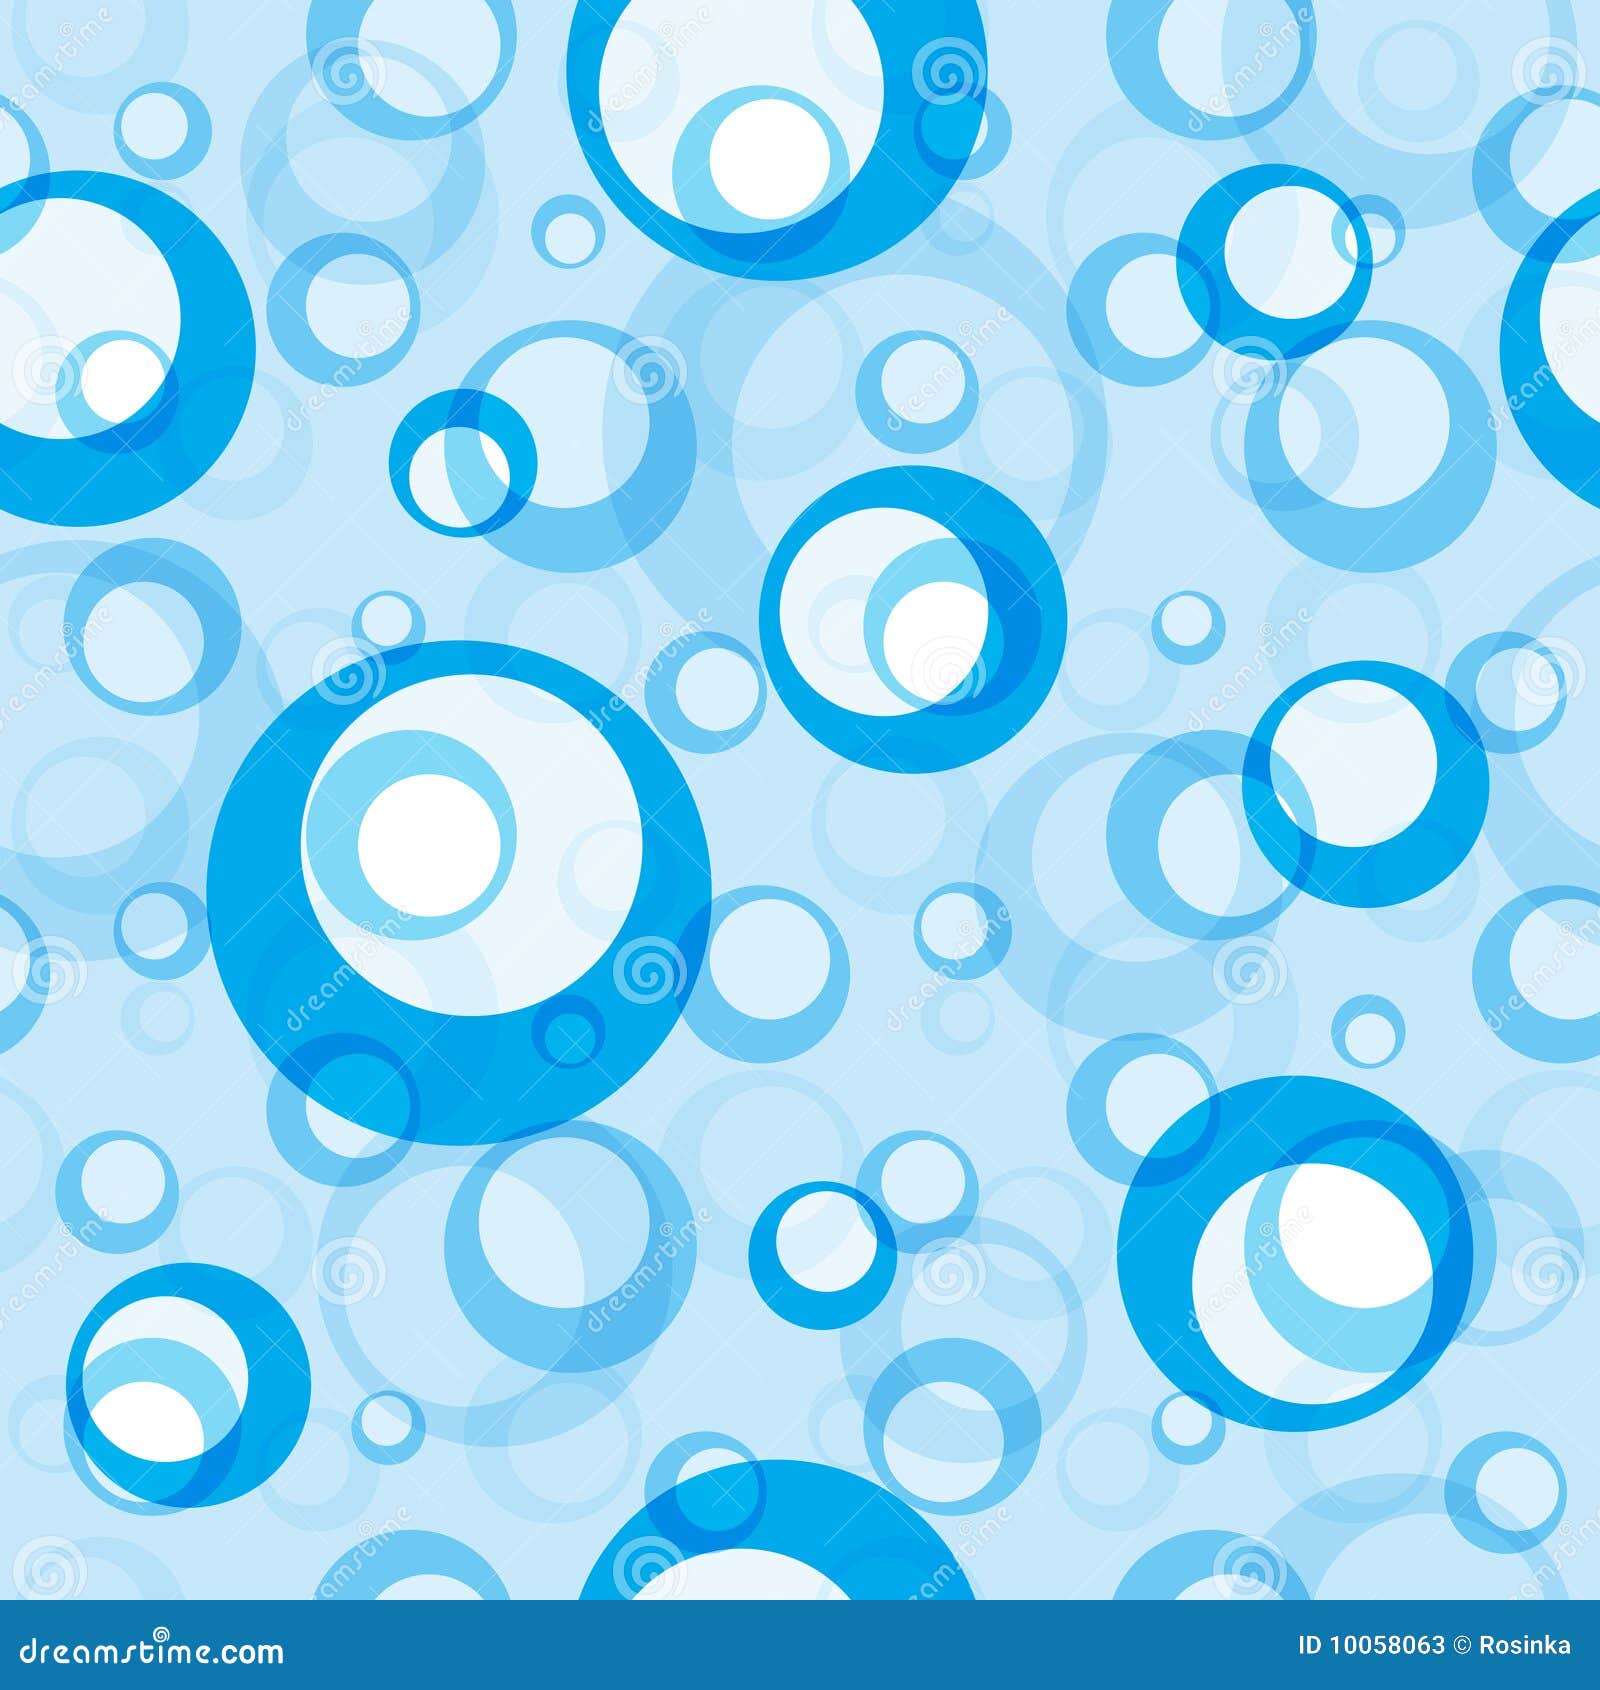 clipart bubbles background - photo #6